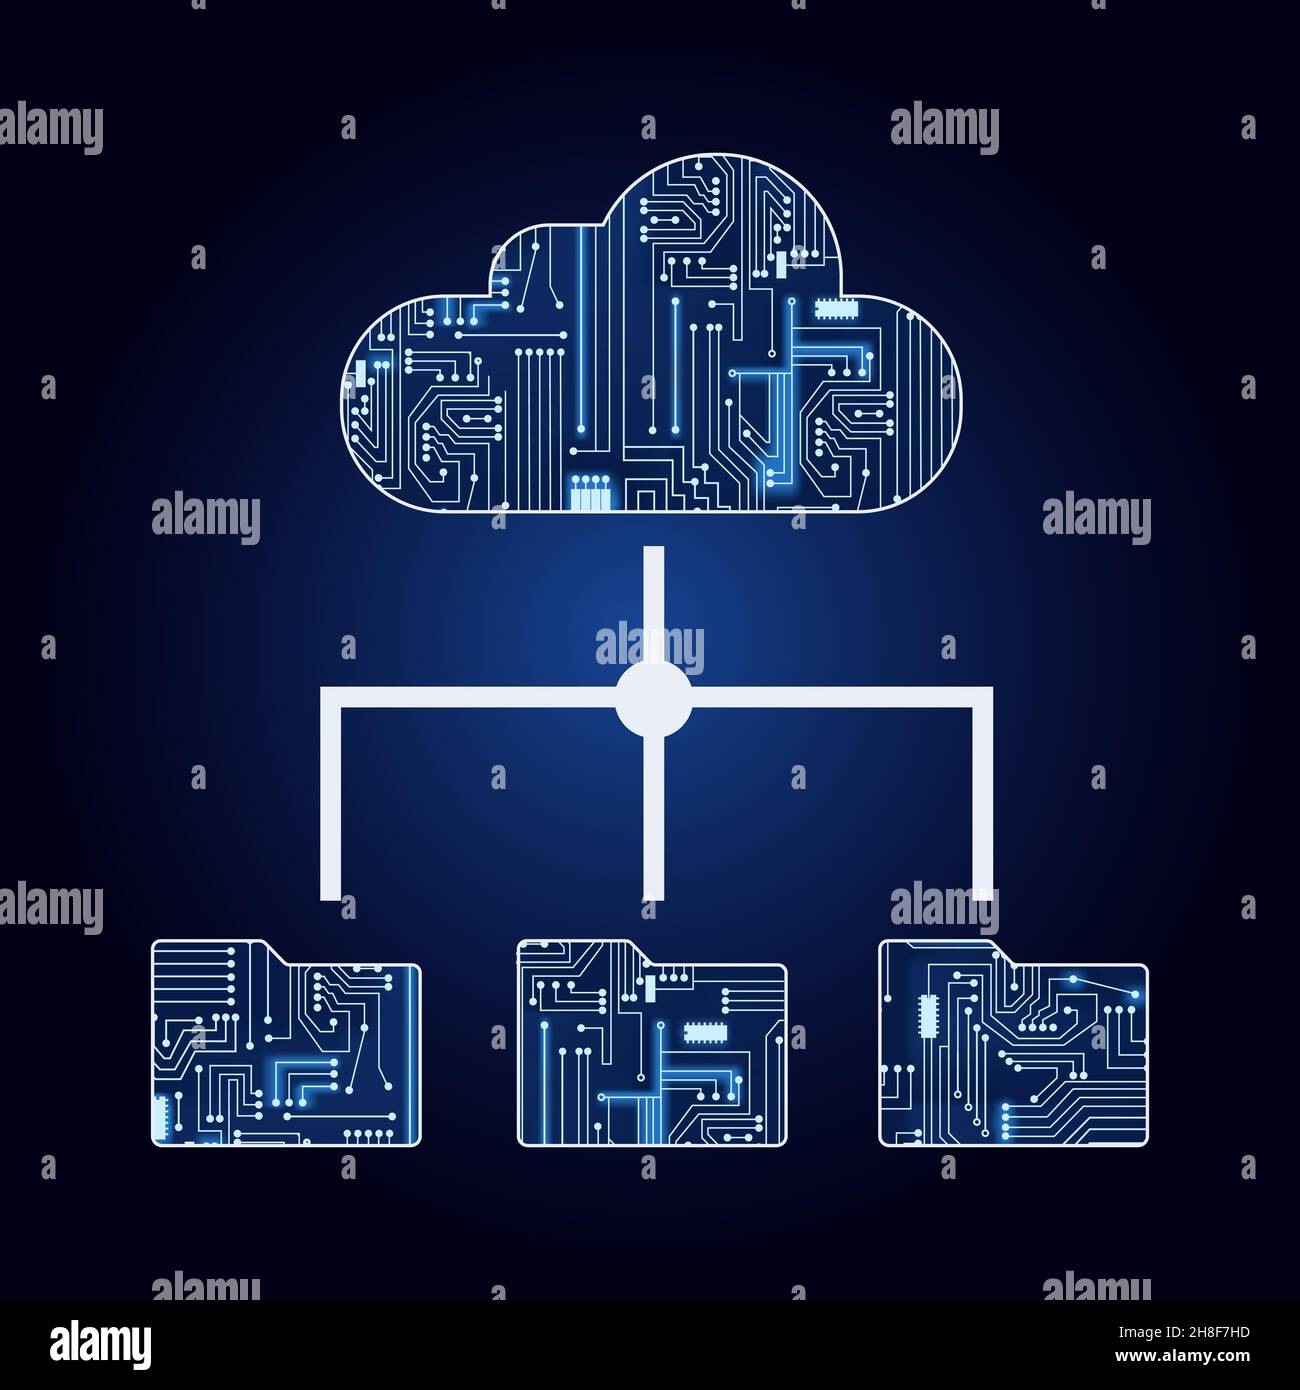 Cloud und Dateien mit elektronischer Schaltung. Blau und Verlaufshintergrund. Konzept des Hochladens oder Herunterladens in die Cloud. Cloud-Computing. Stock Vektor